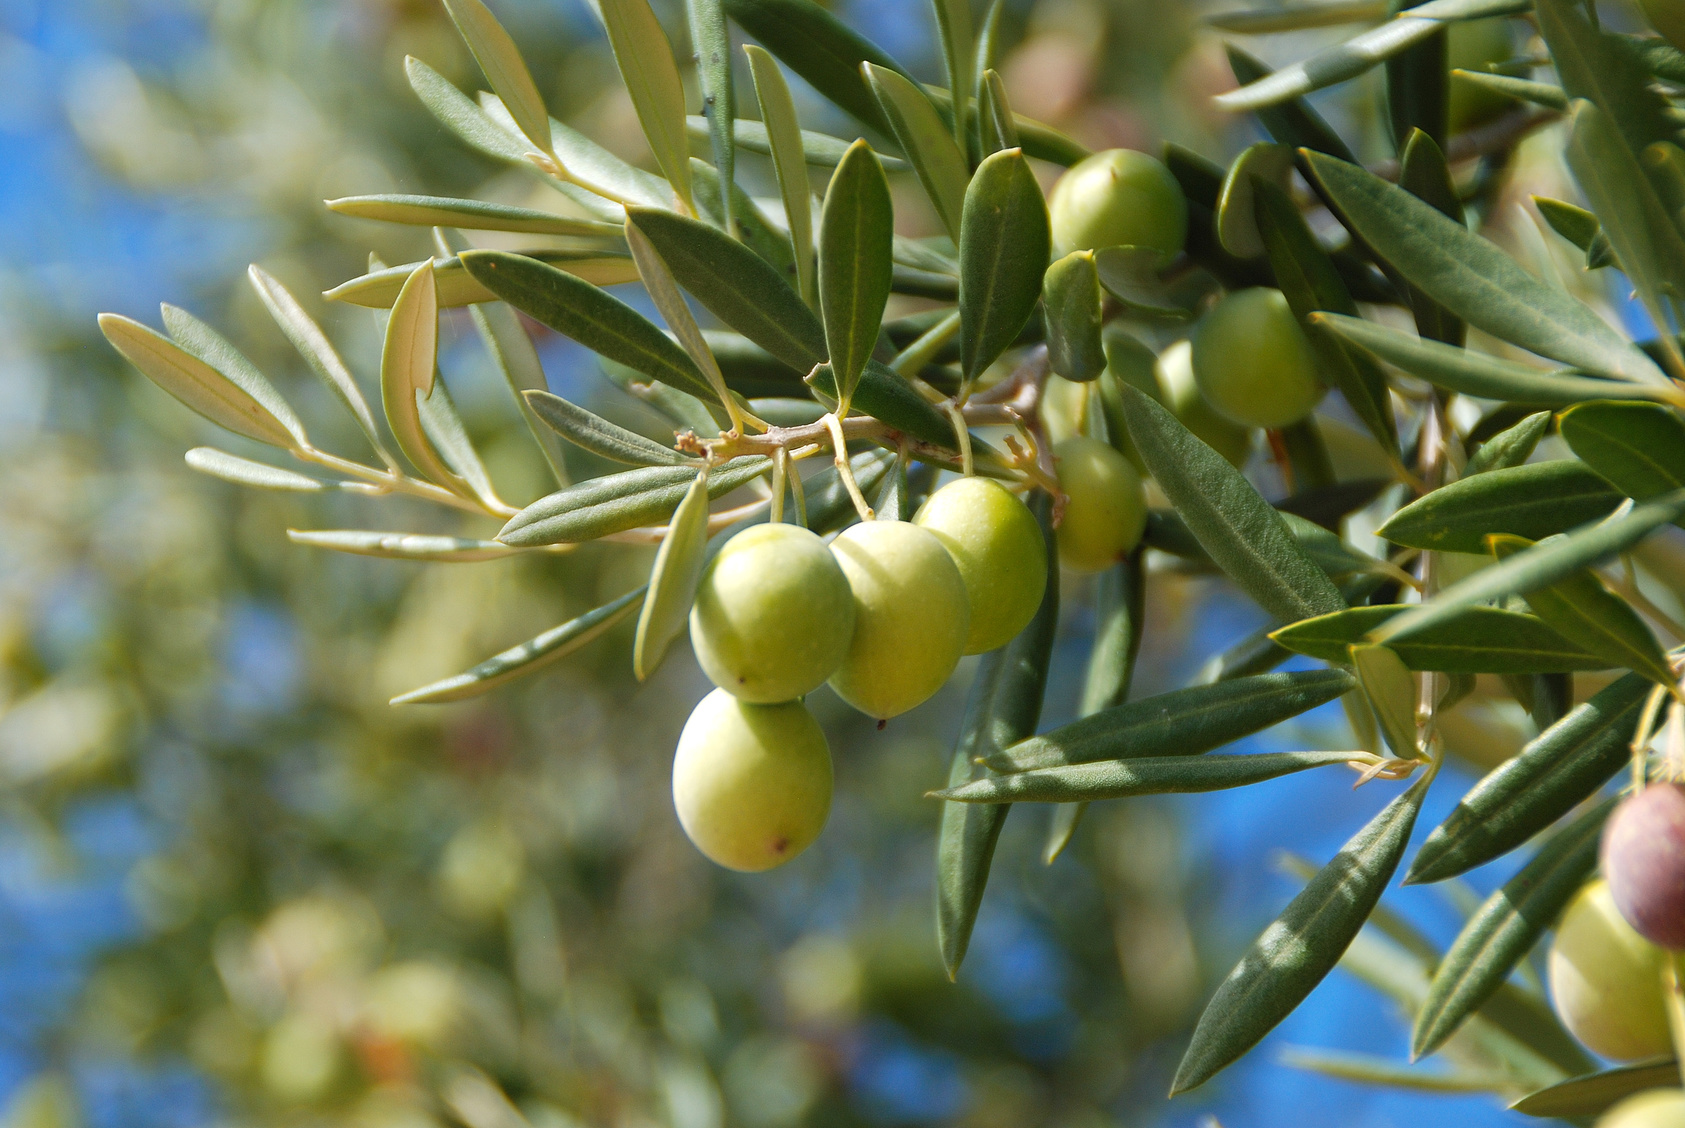 Les oliveraies sont régulièrement attaquées par un insecte qui pond ses œufs dans les olives. © MIKYIMAGENARTE, Fotolia